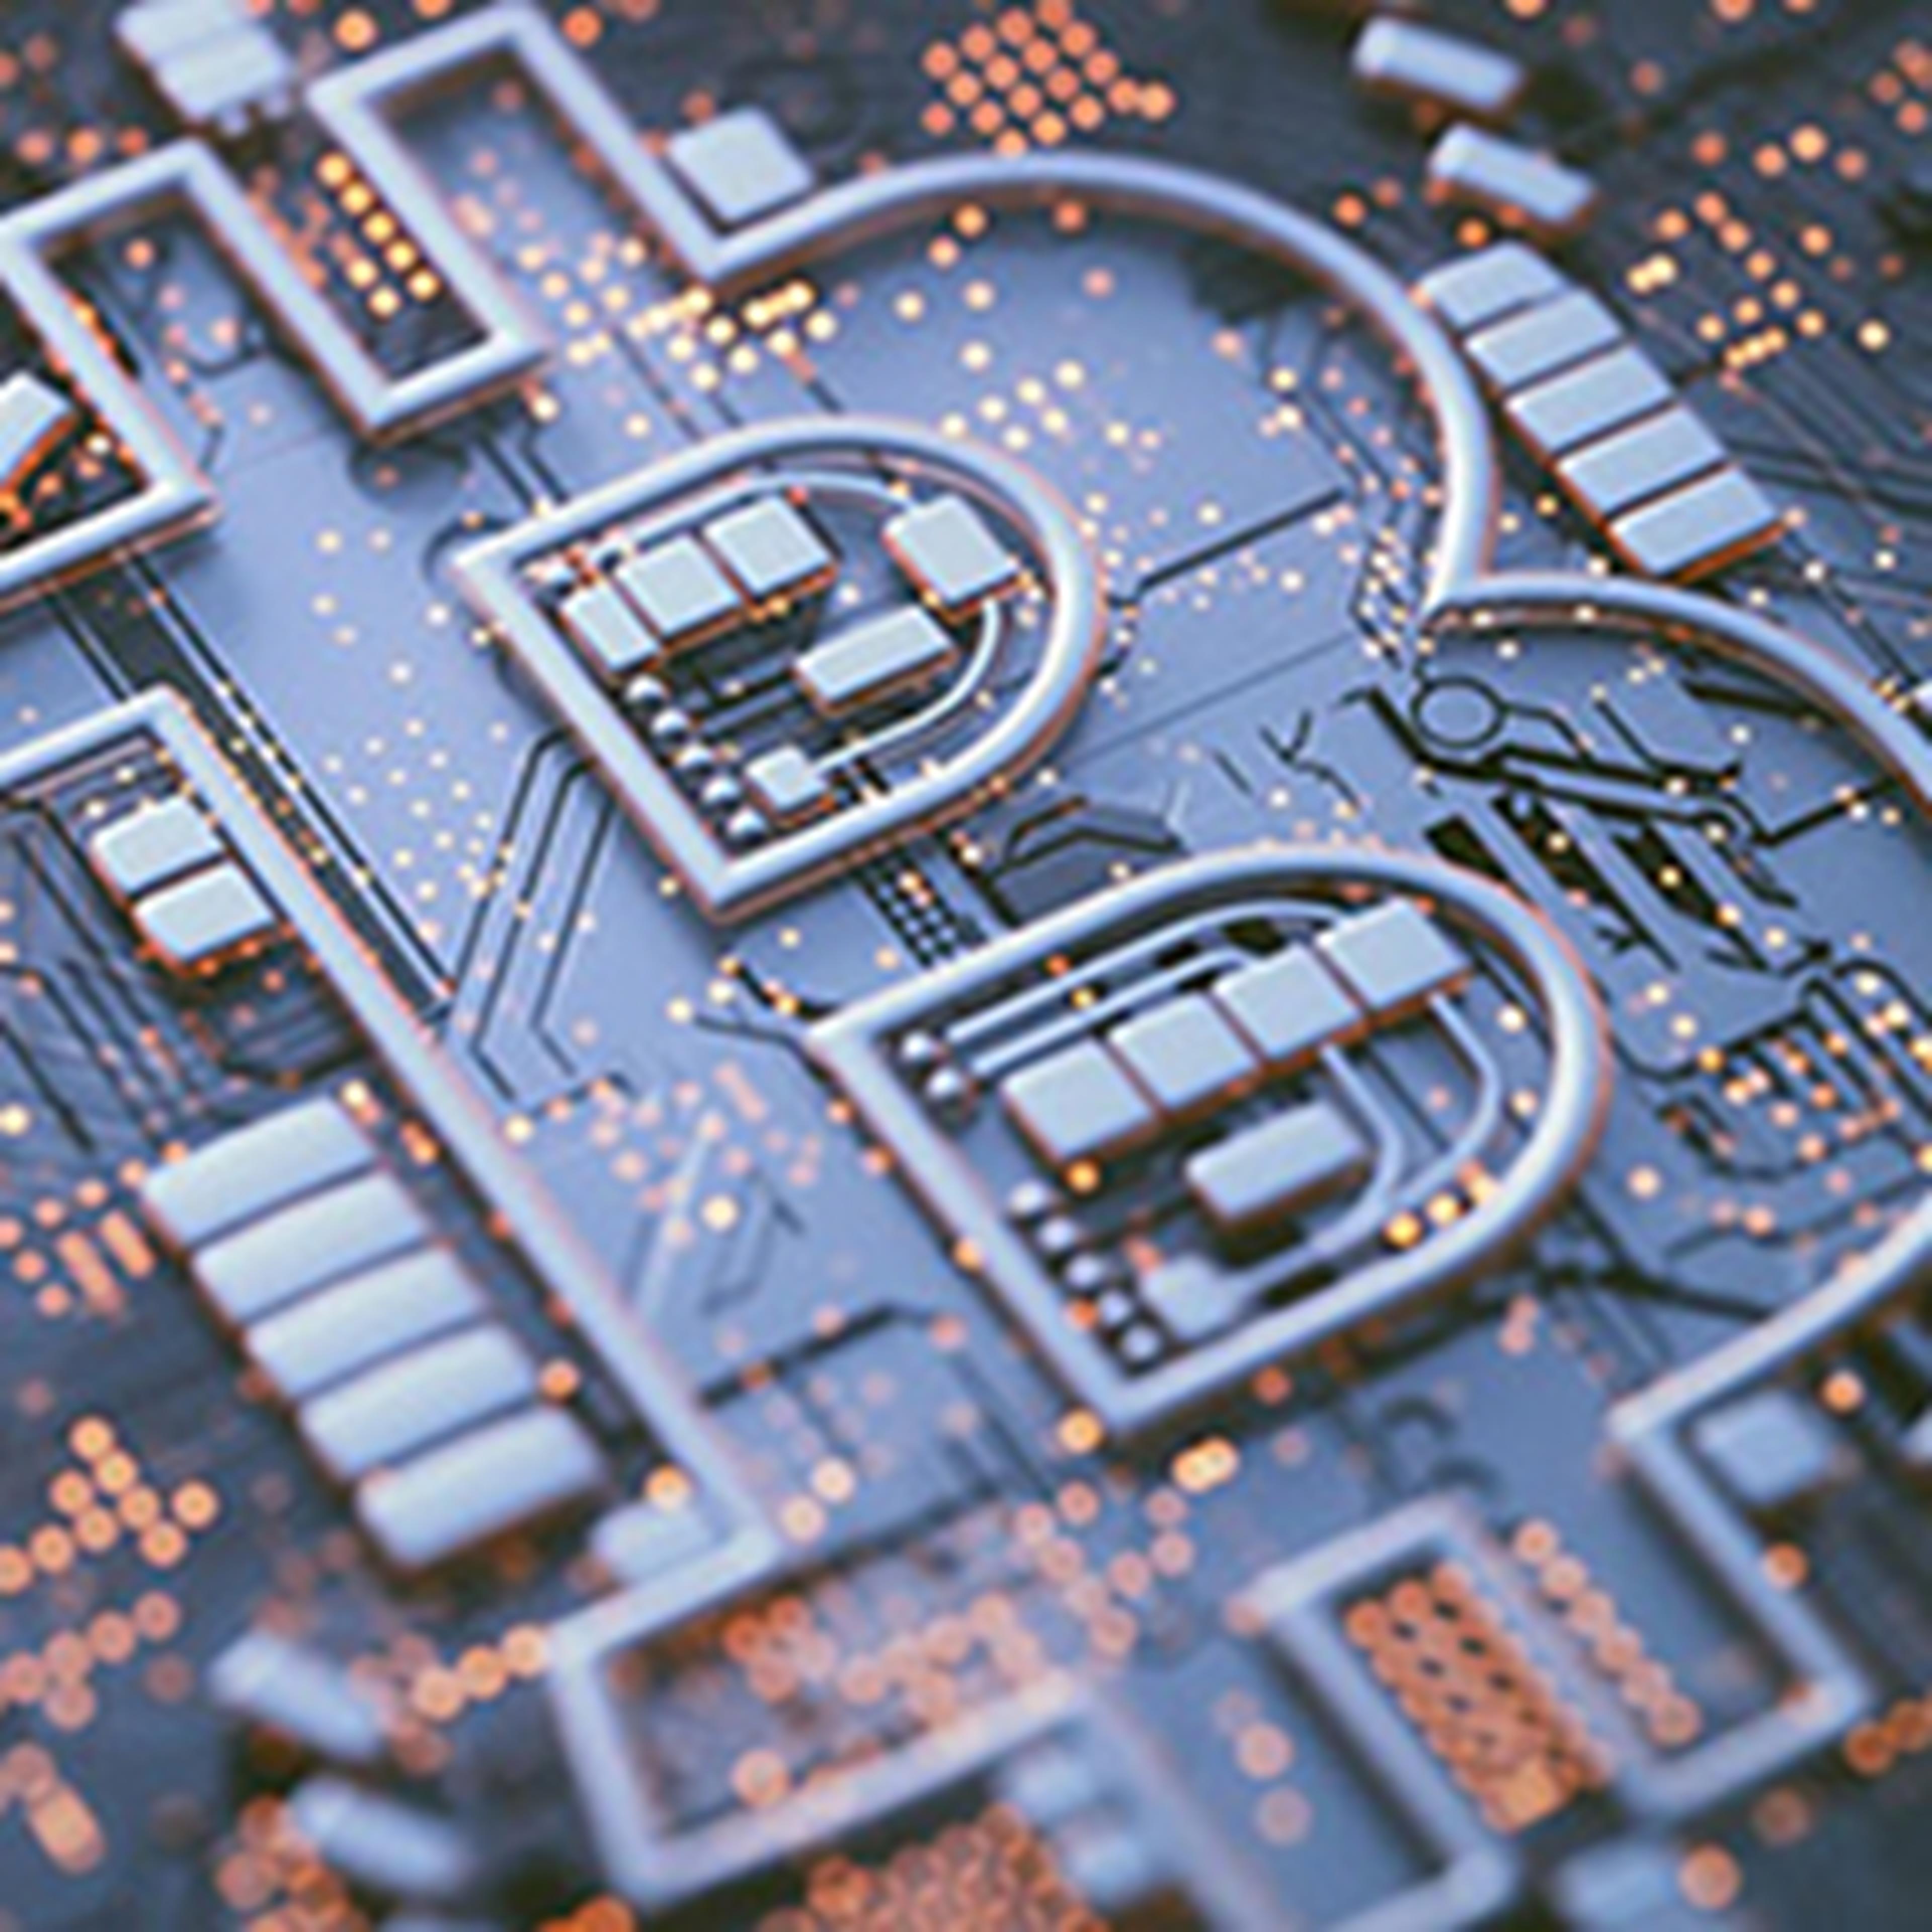 Bitcoin logo in circuit board